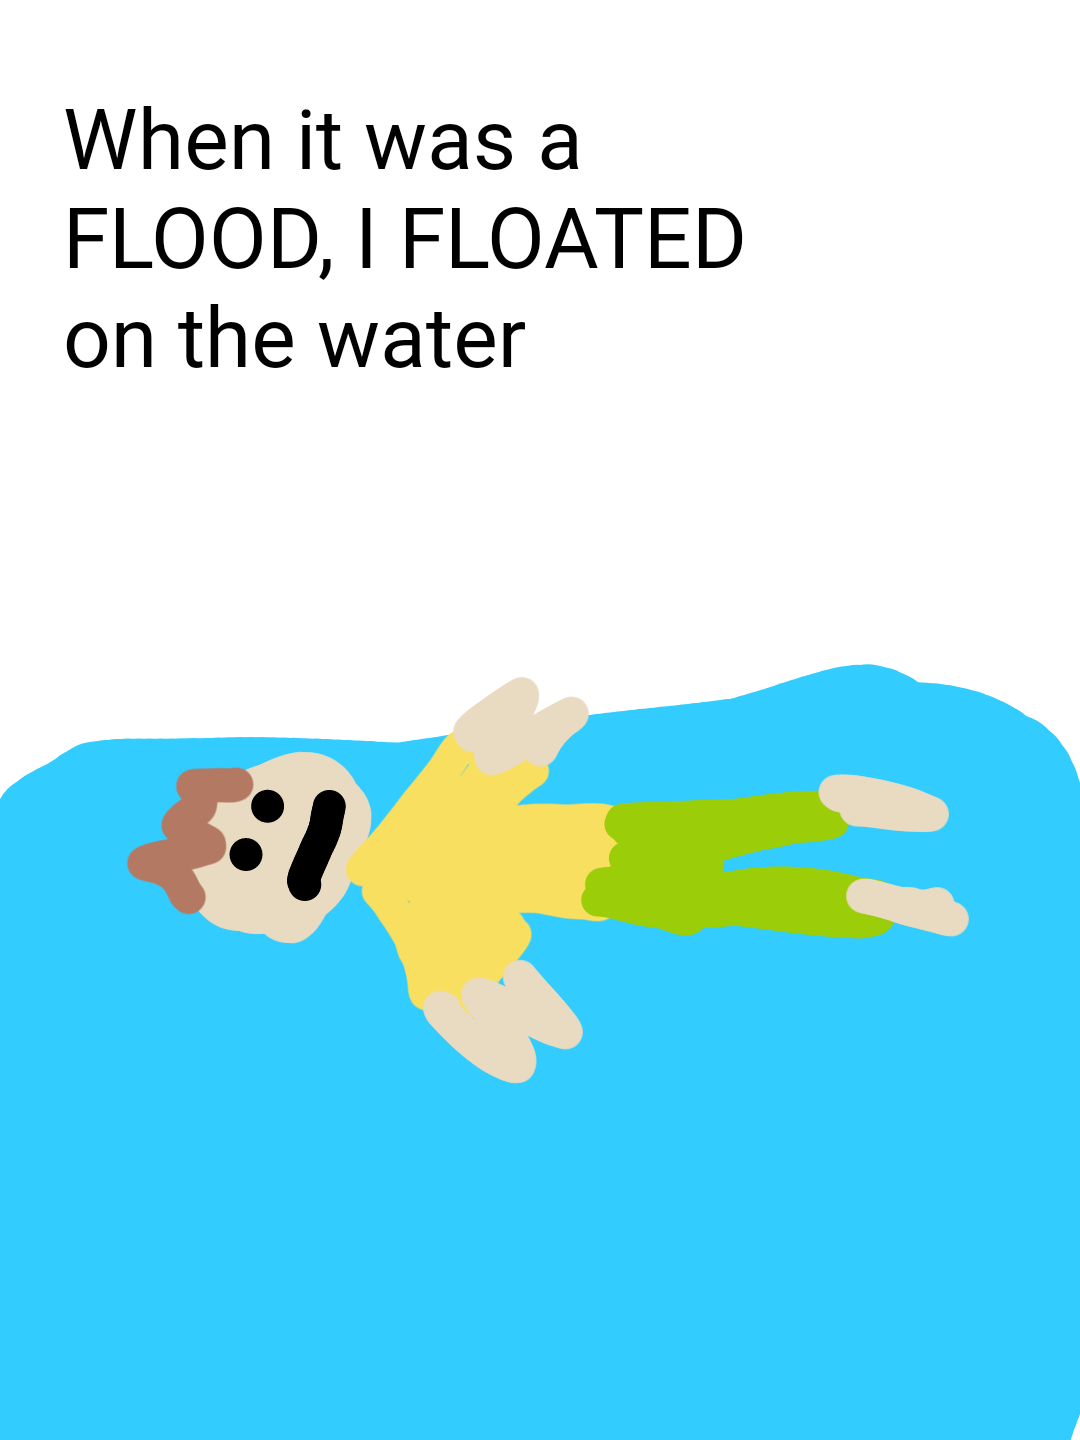 float - unosić się